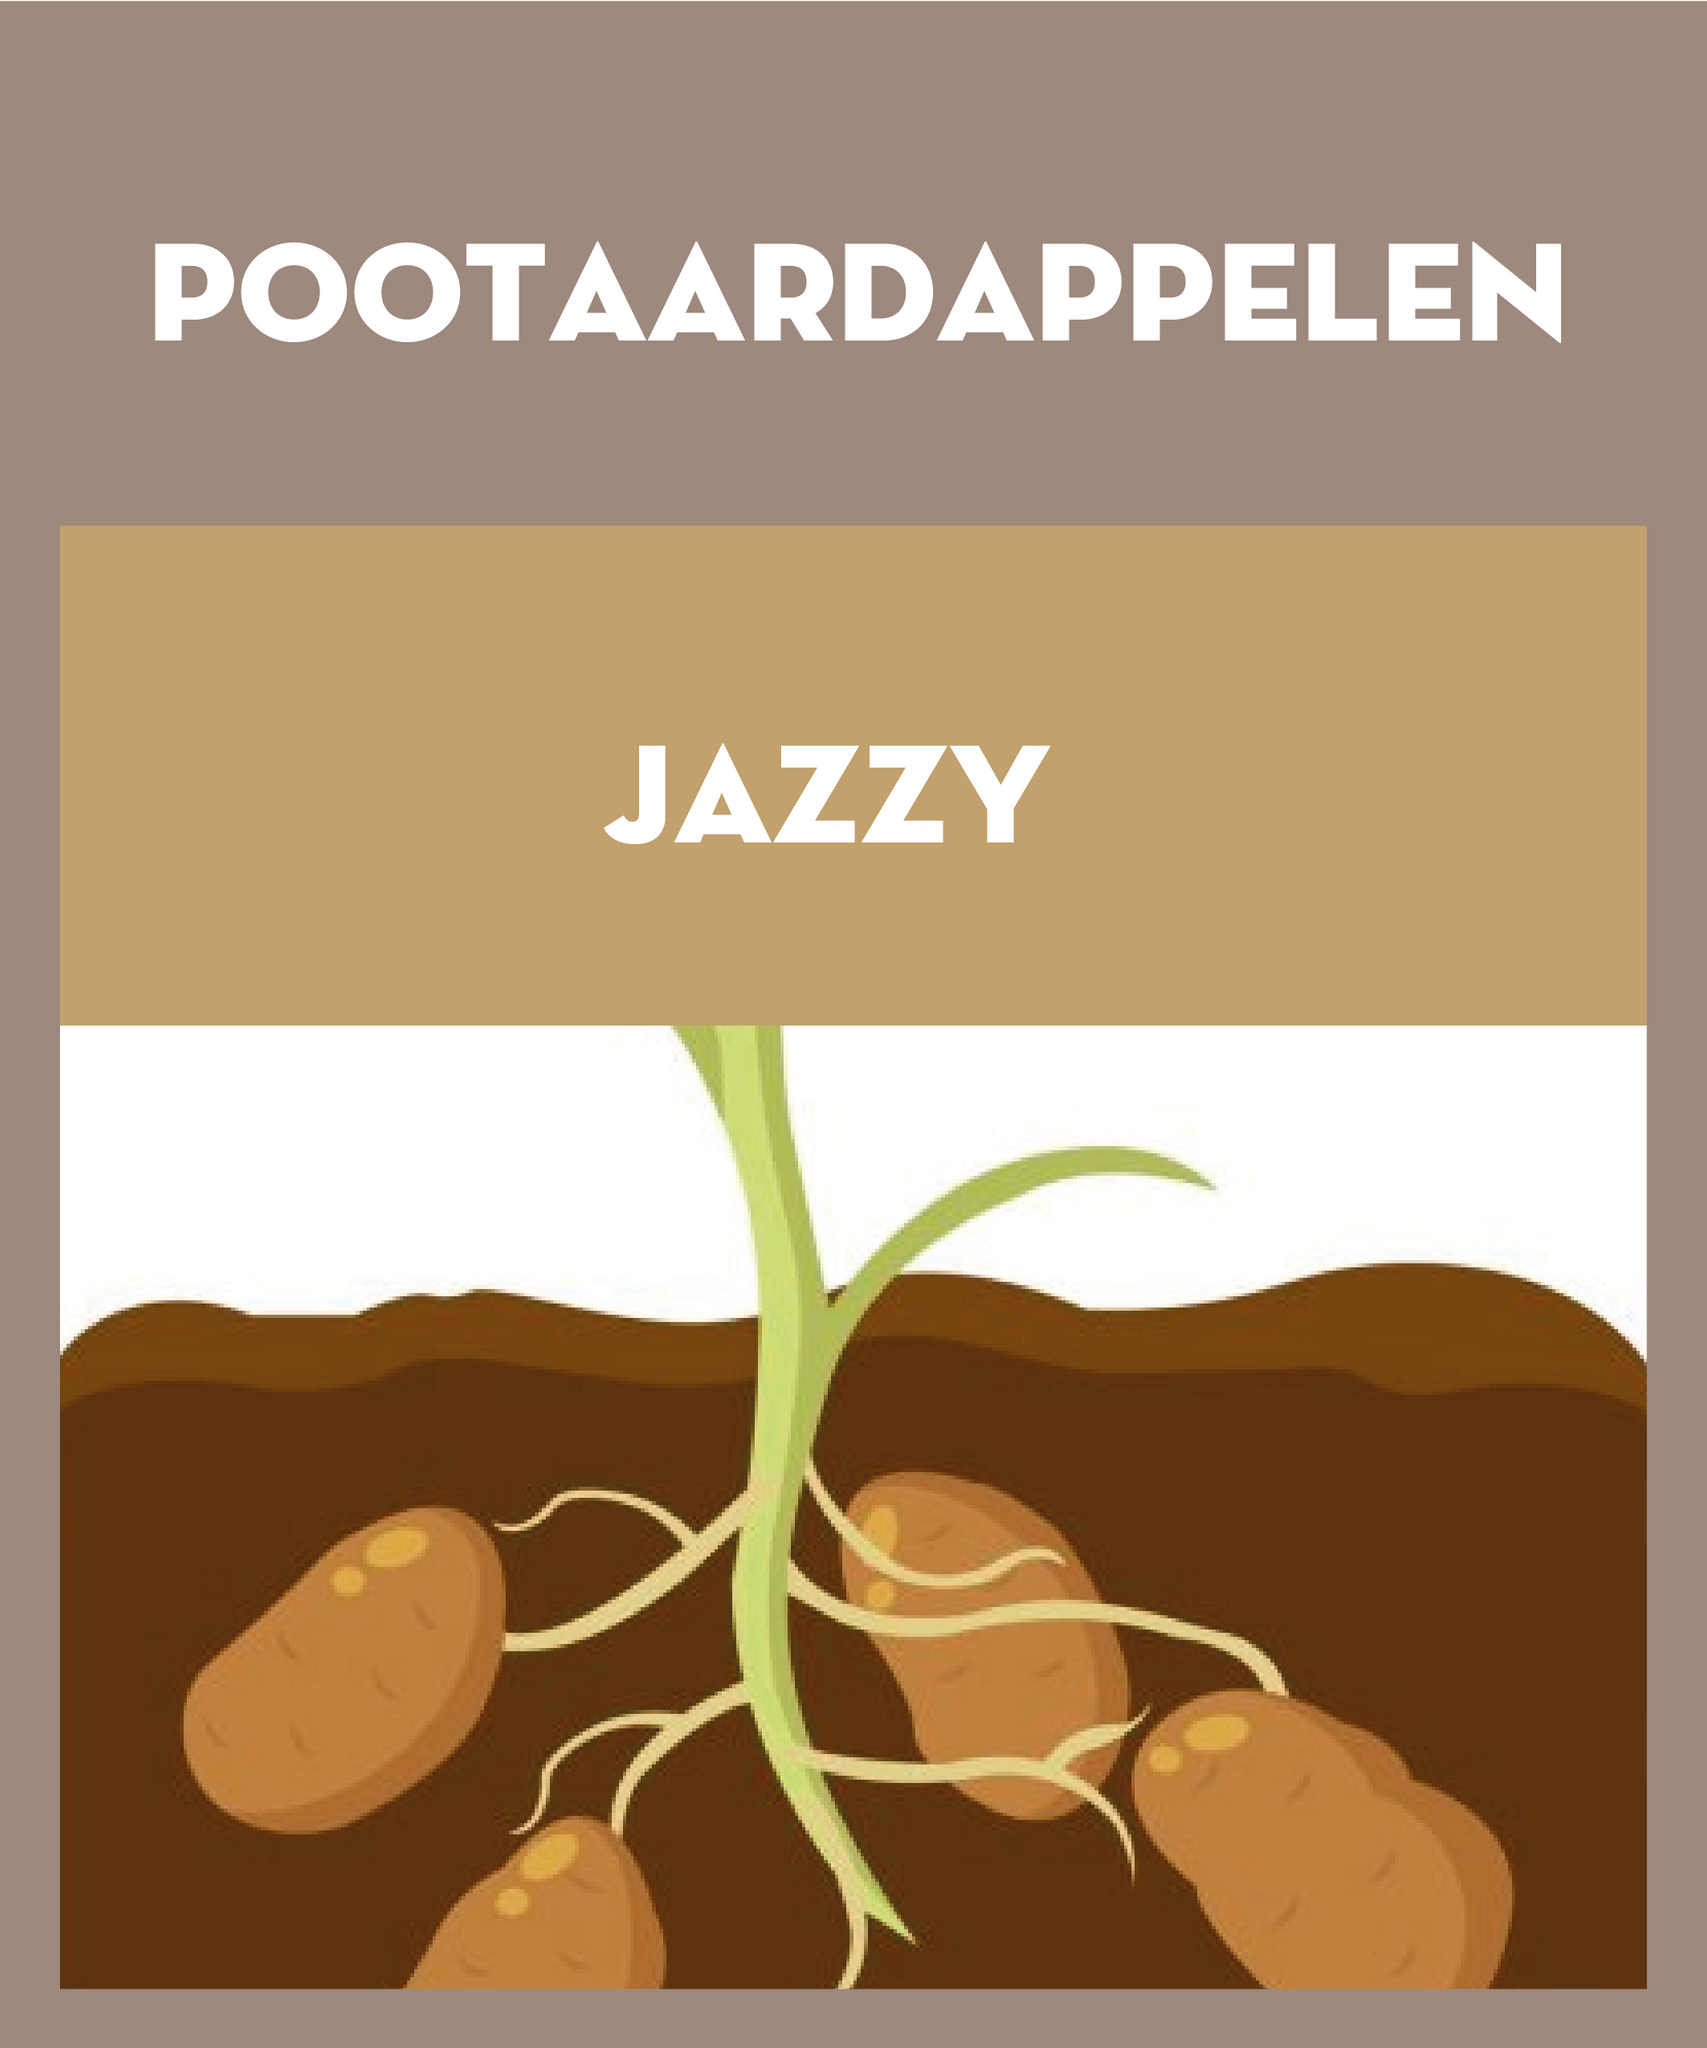 Jazzy pootaardappelen 2.5kg